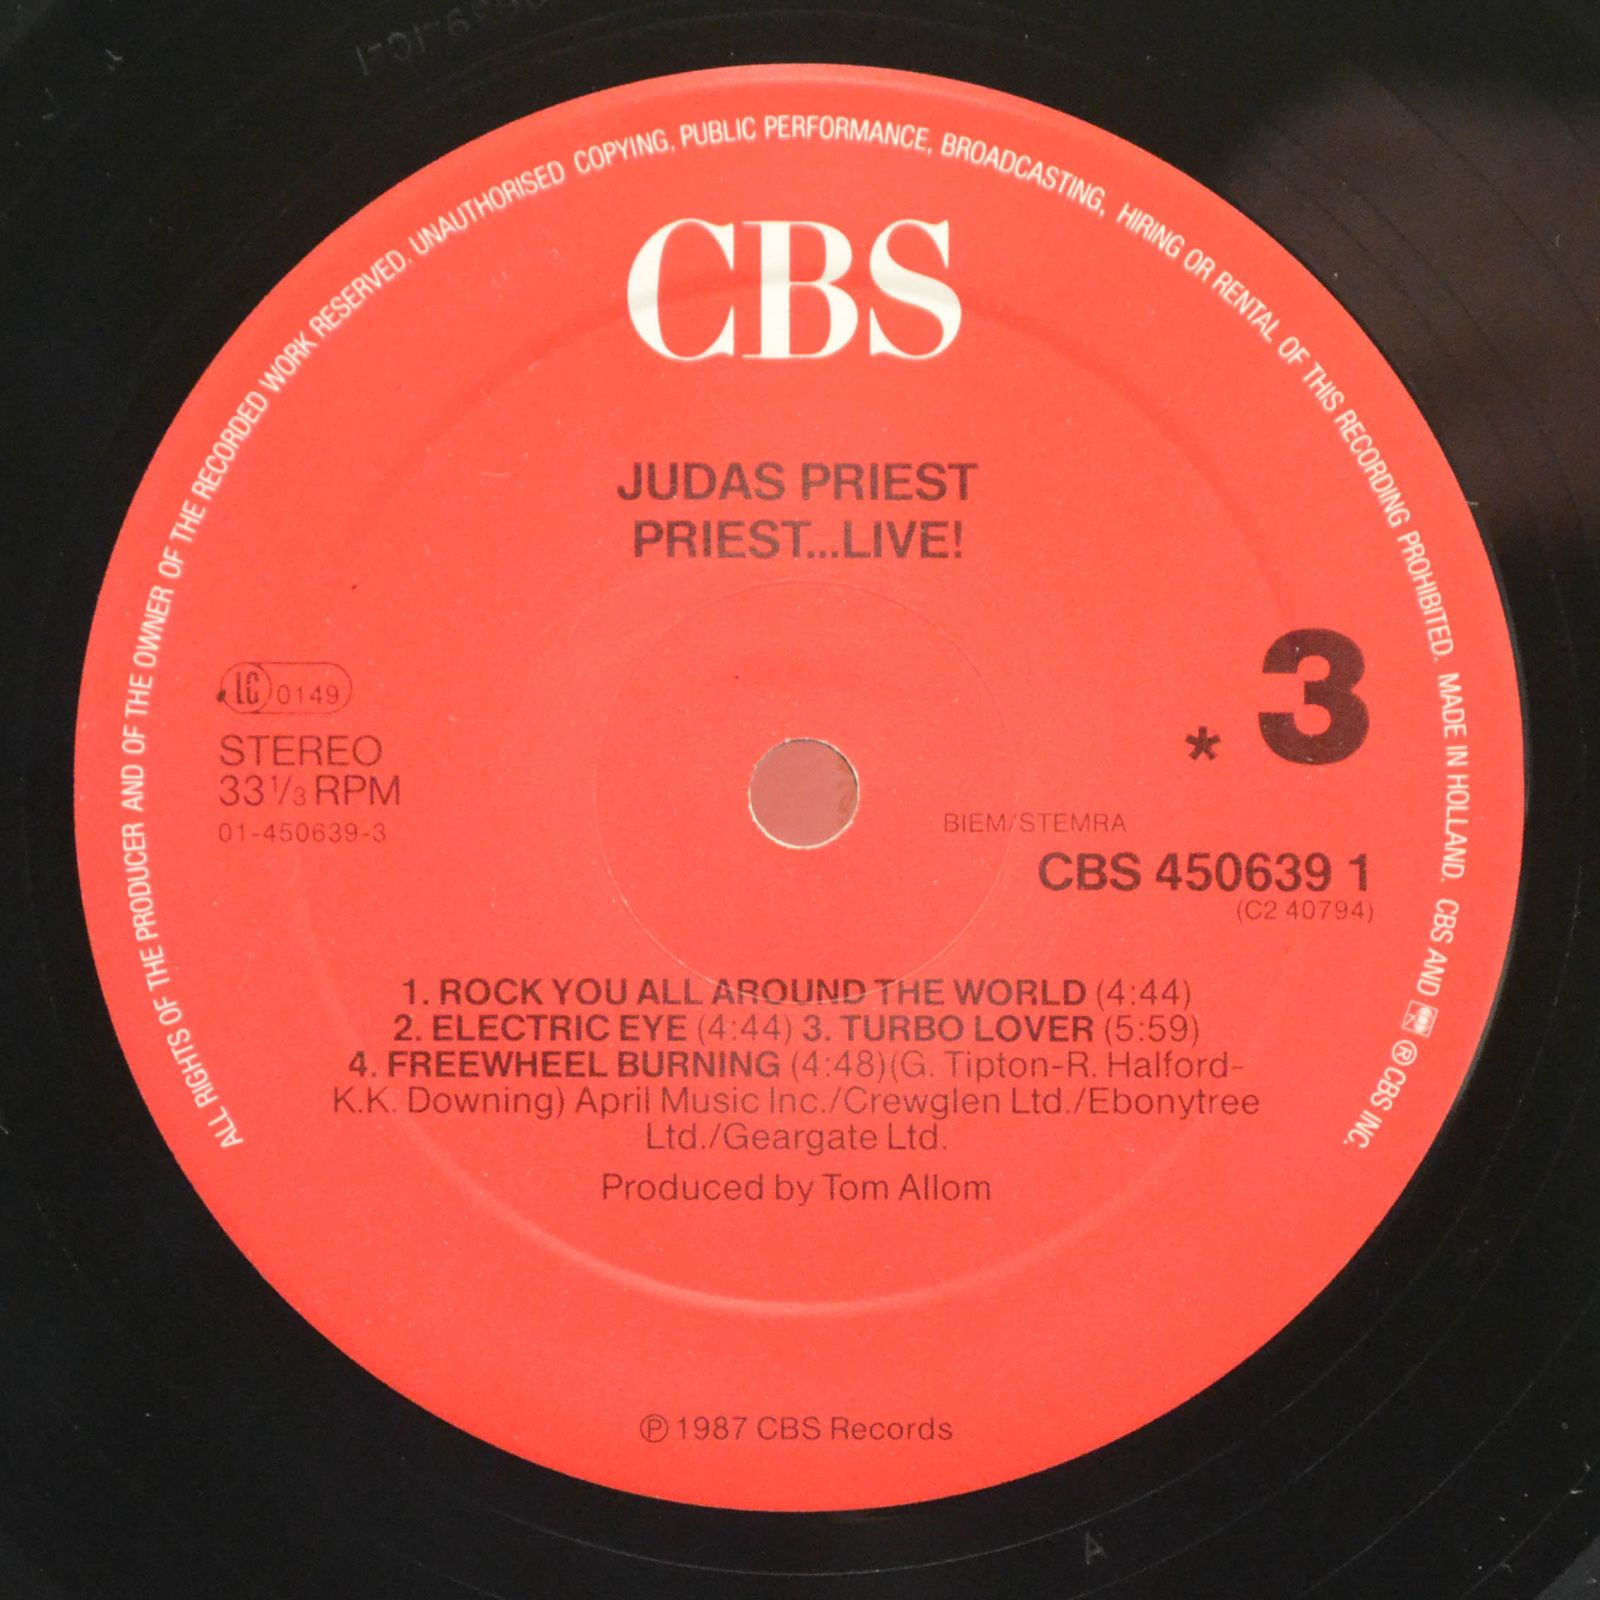 Judas Priest — Priest...Live! (2LP), 1975